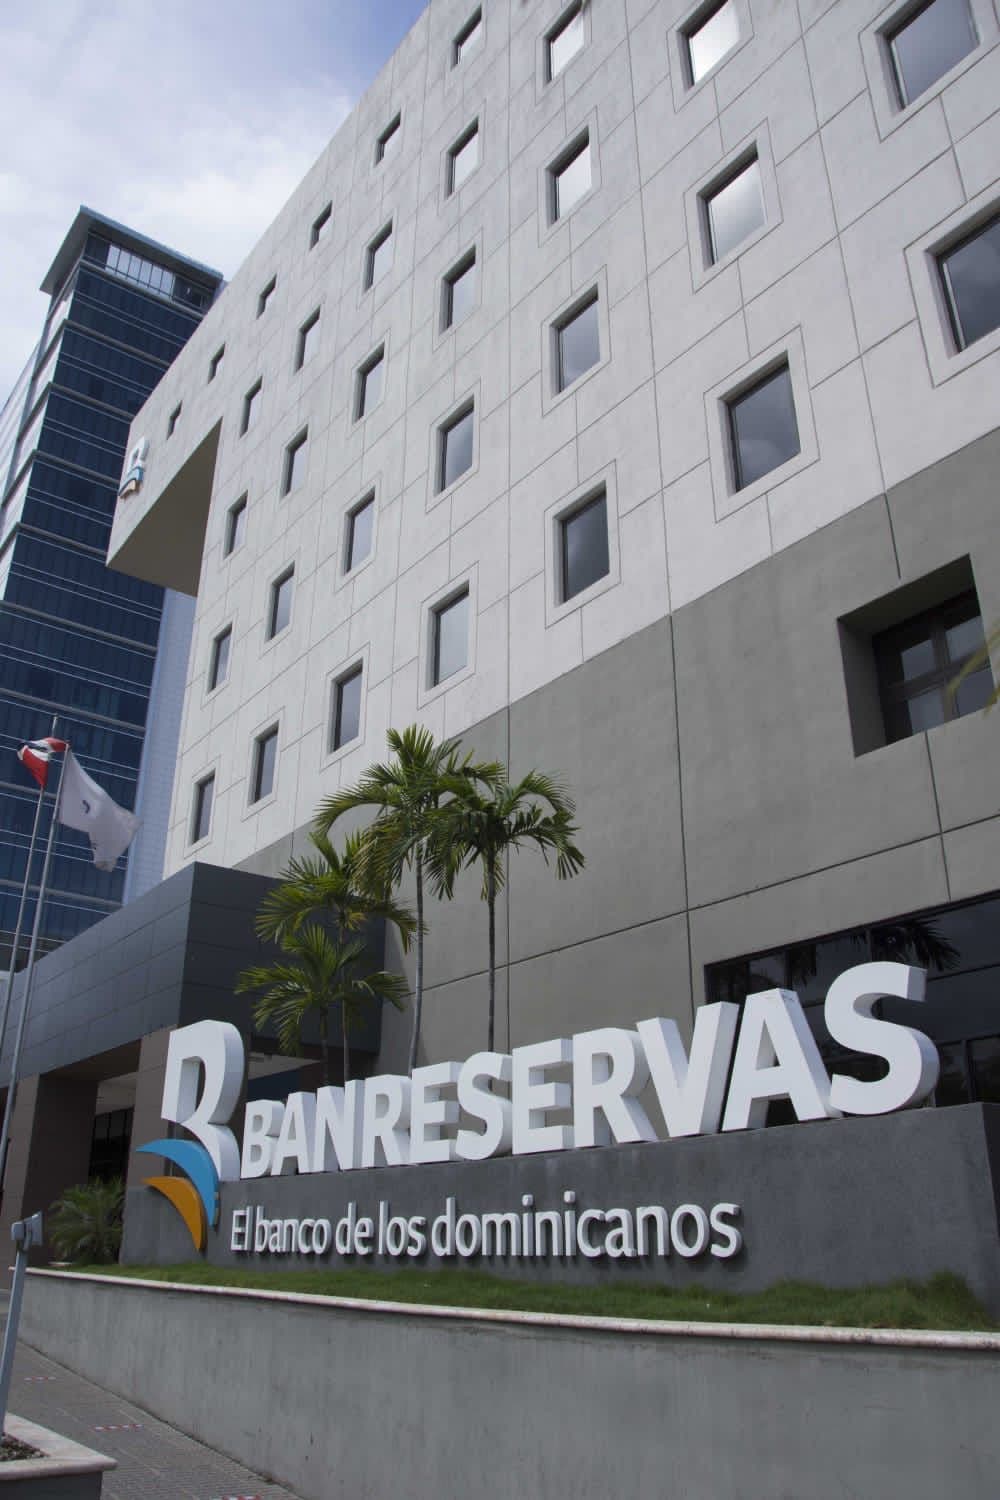 Global Finance reconoce a Banreservas como Banco Más Seguro RD 